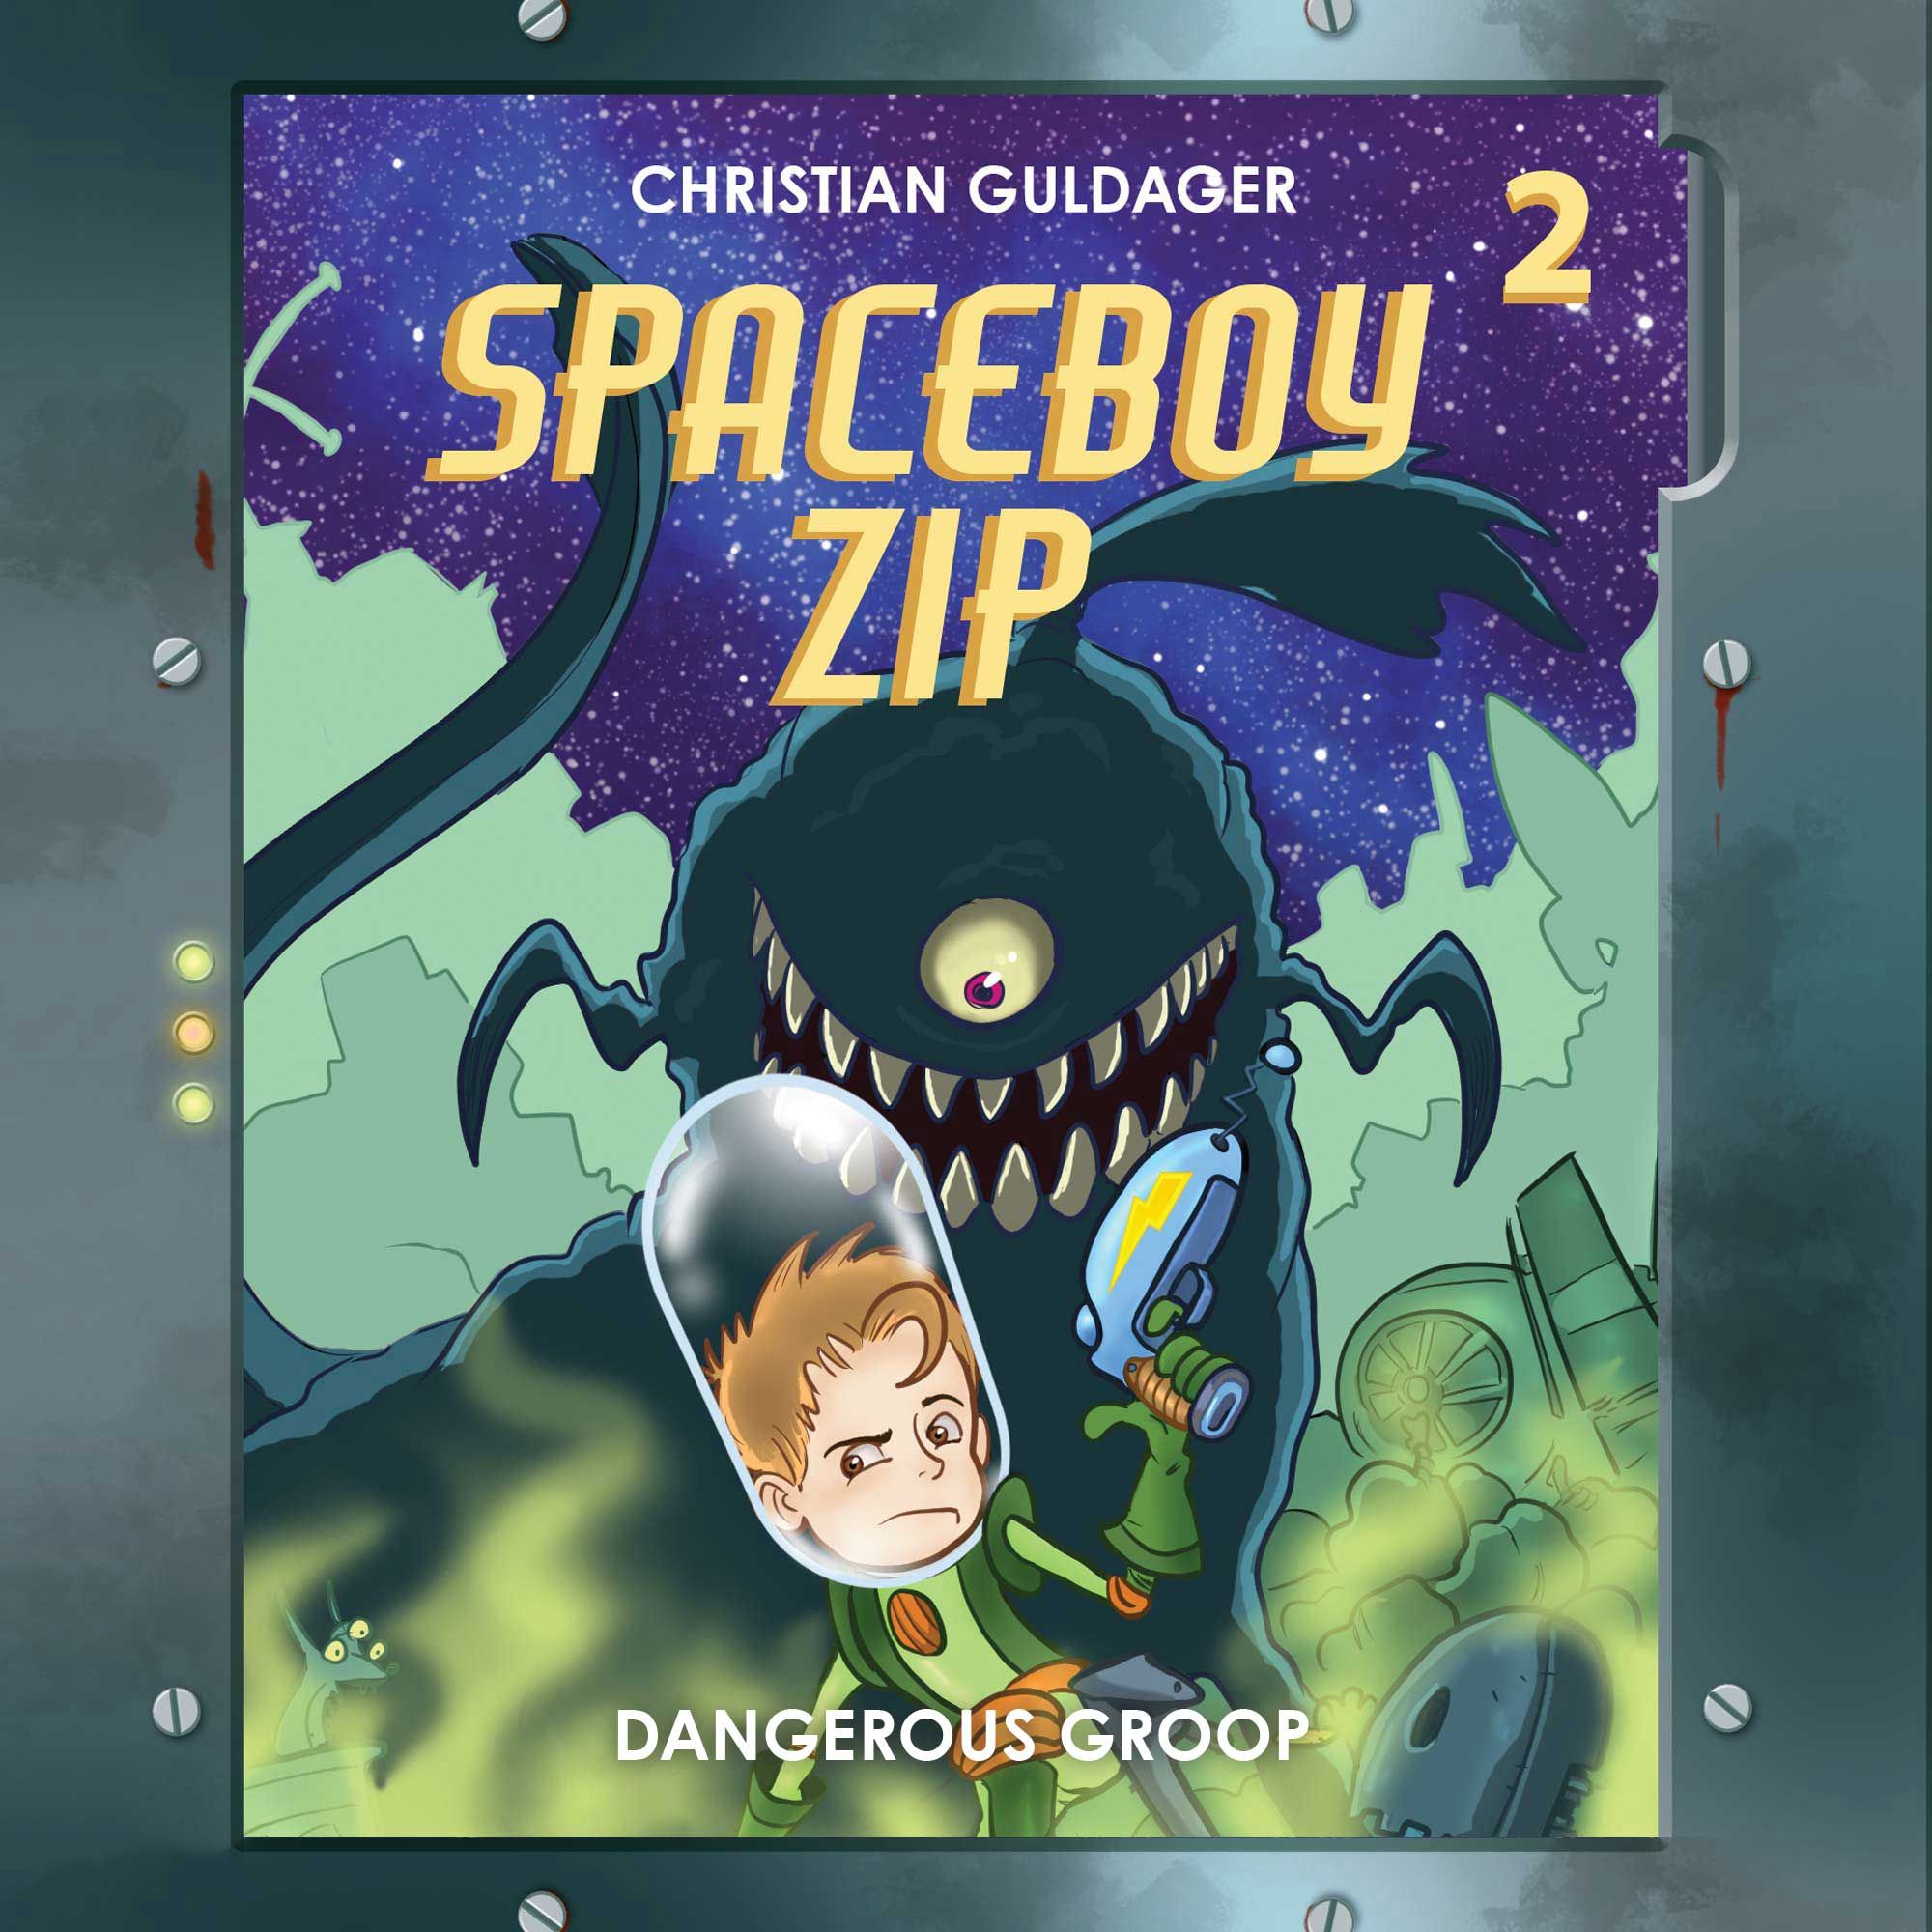 Spaceboy Zip #2: The Dangerous Groop, audiobook by Christian Guldager